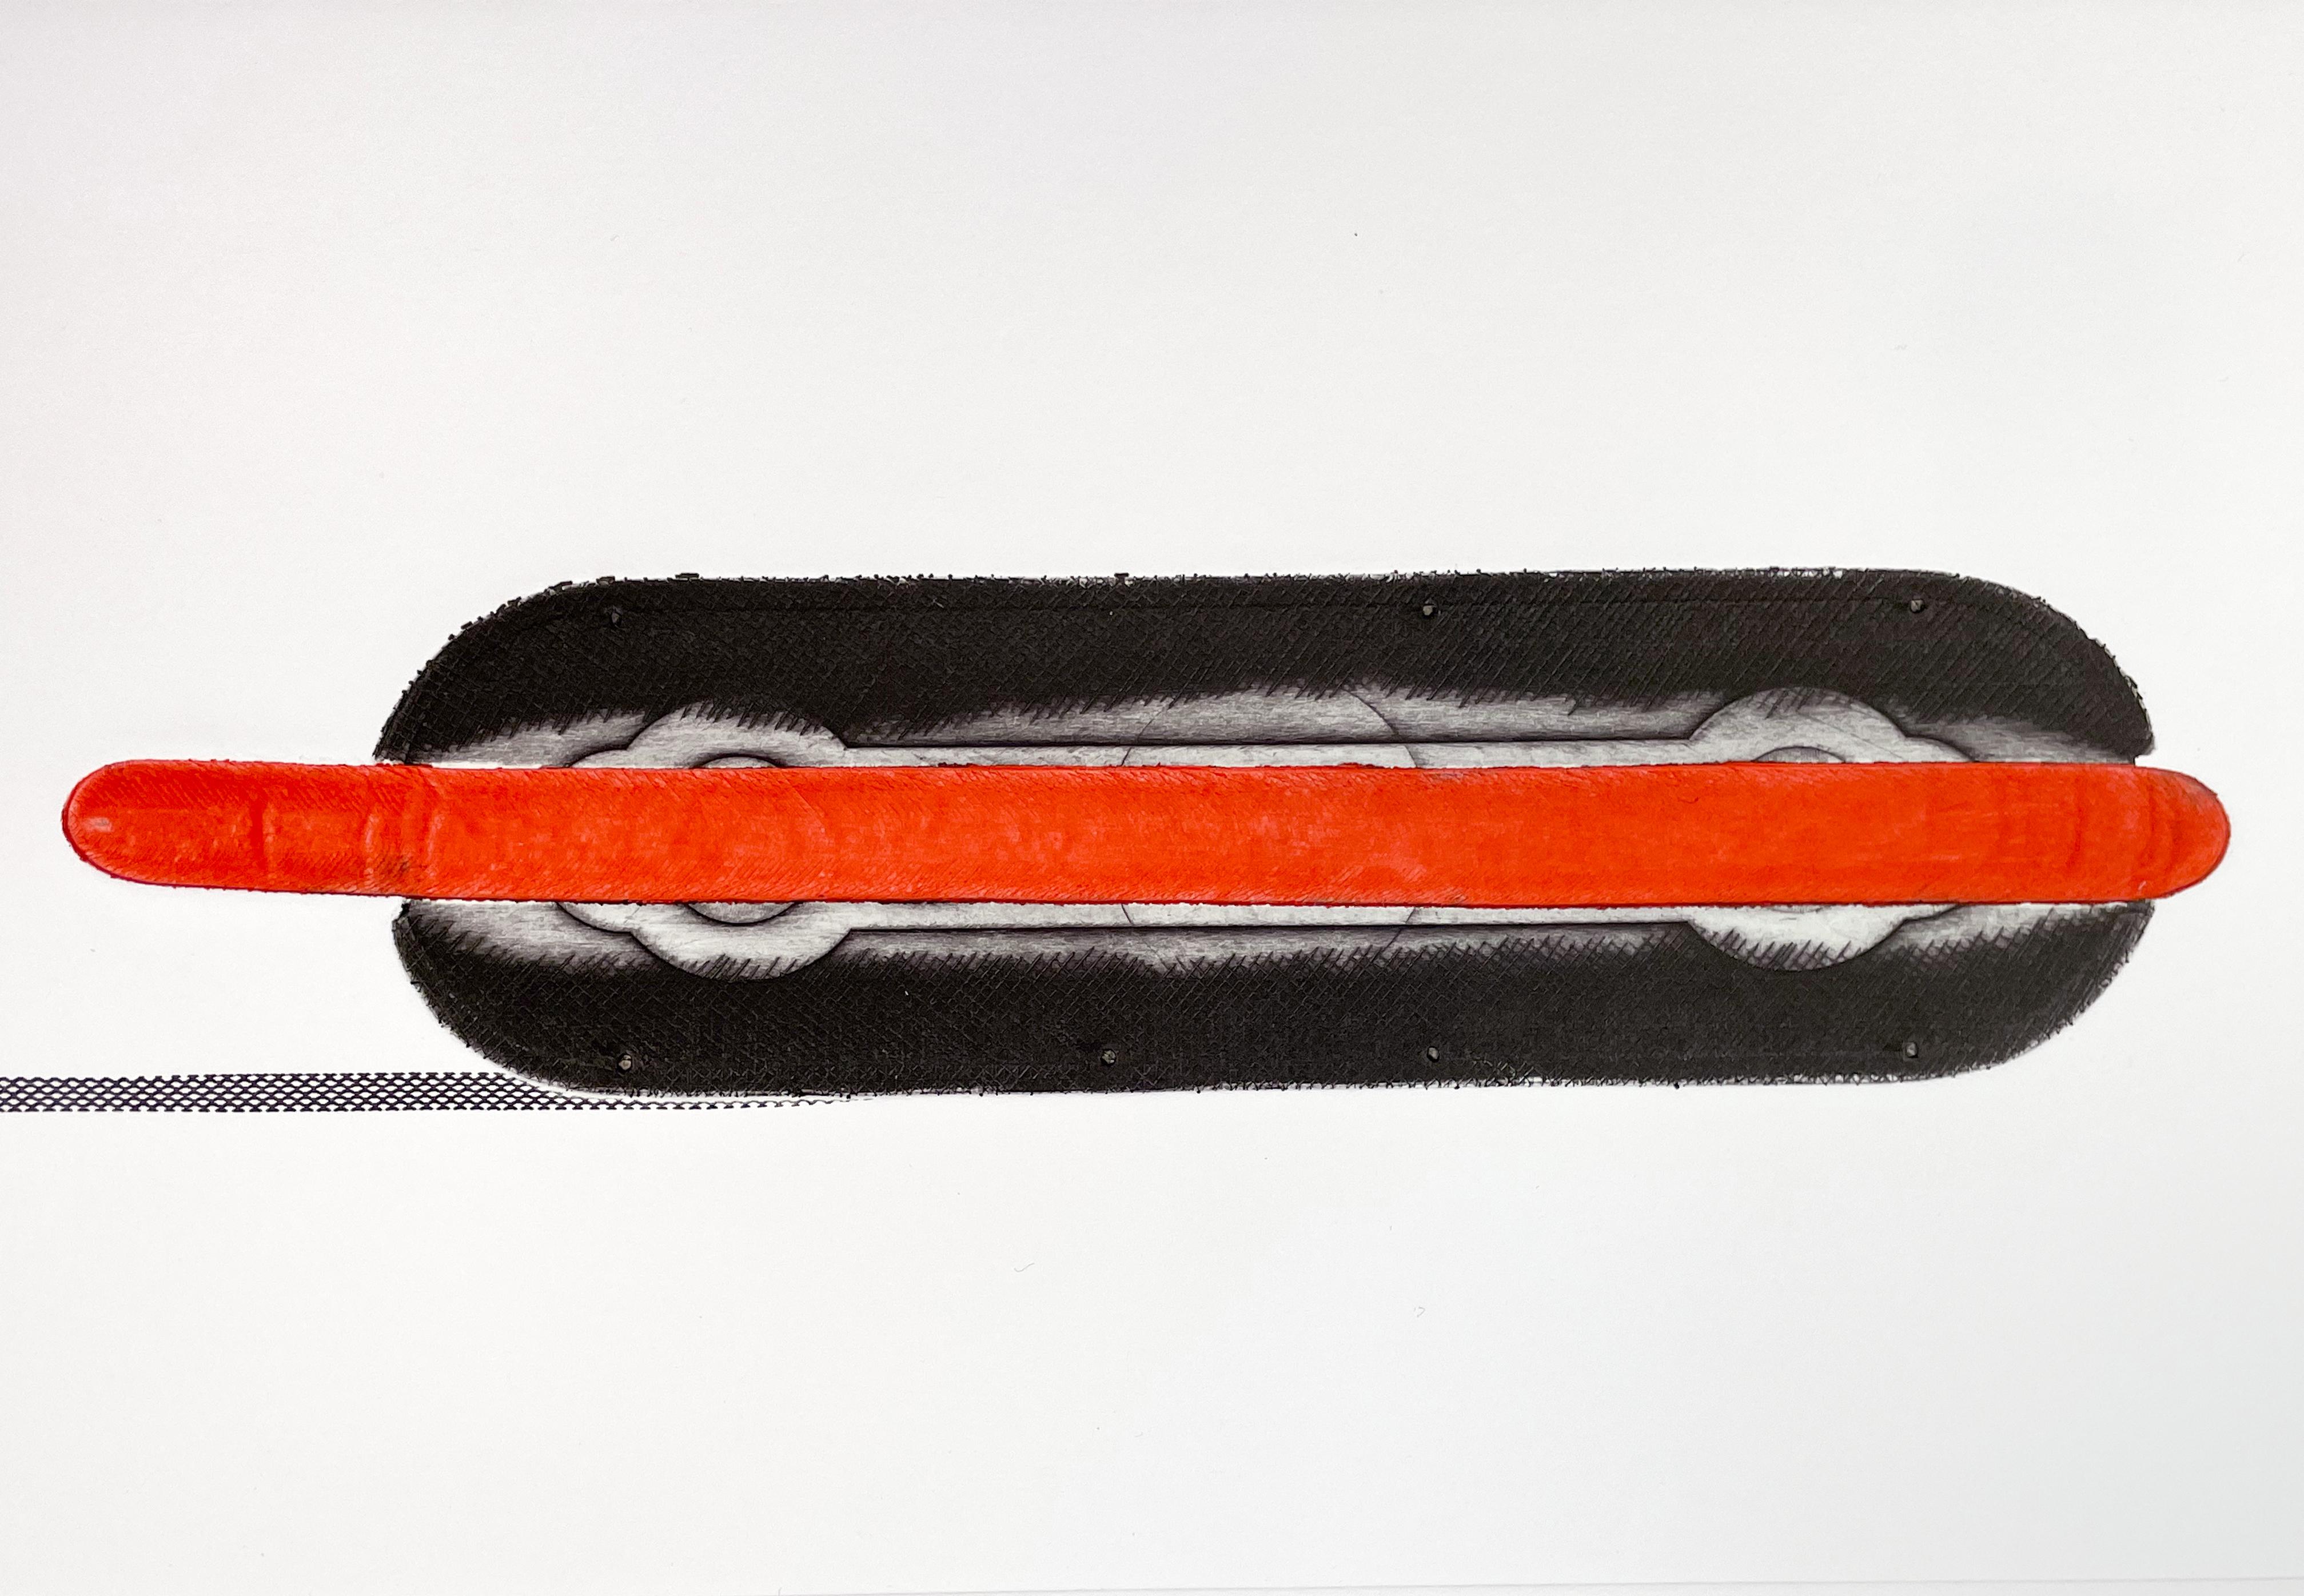 Hot Dog, Colin Self. Britische britische Pop Art Kalter Krieg Amerikanische leuchtend rot schwarze Radierung